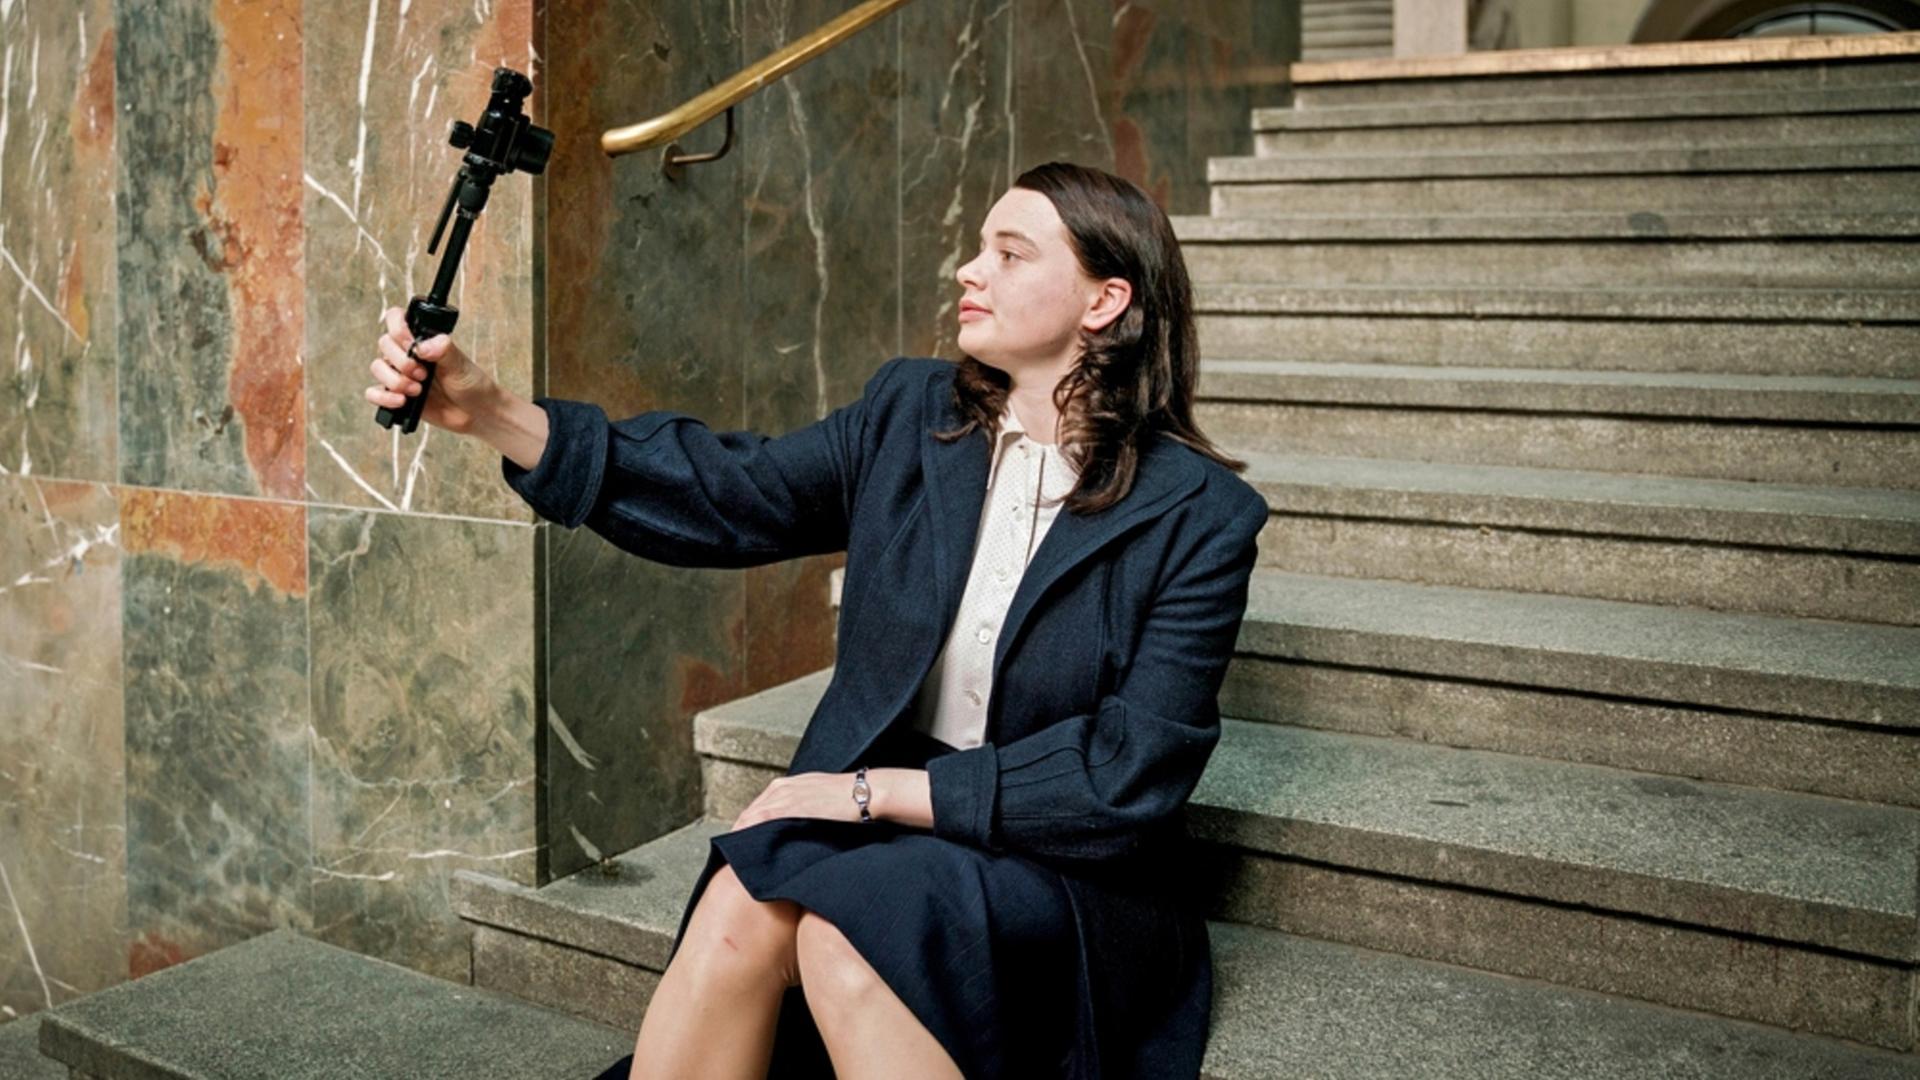 Eine junge Frau sitzt auf einer Treppe und filmt sich mit einer Kamera.